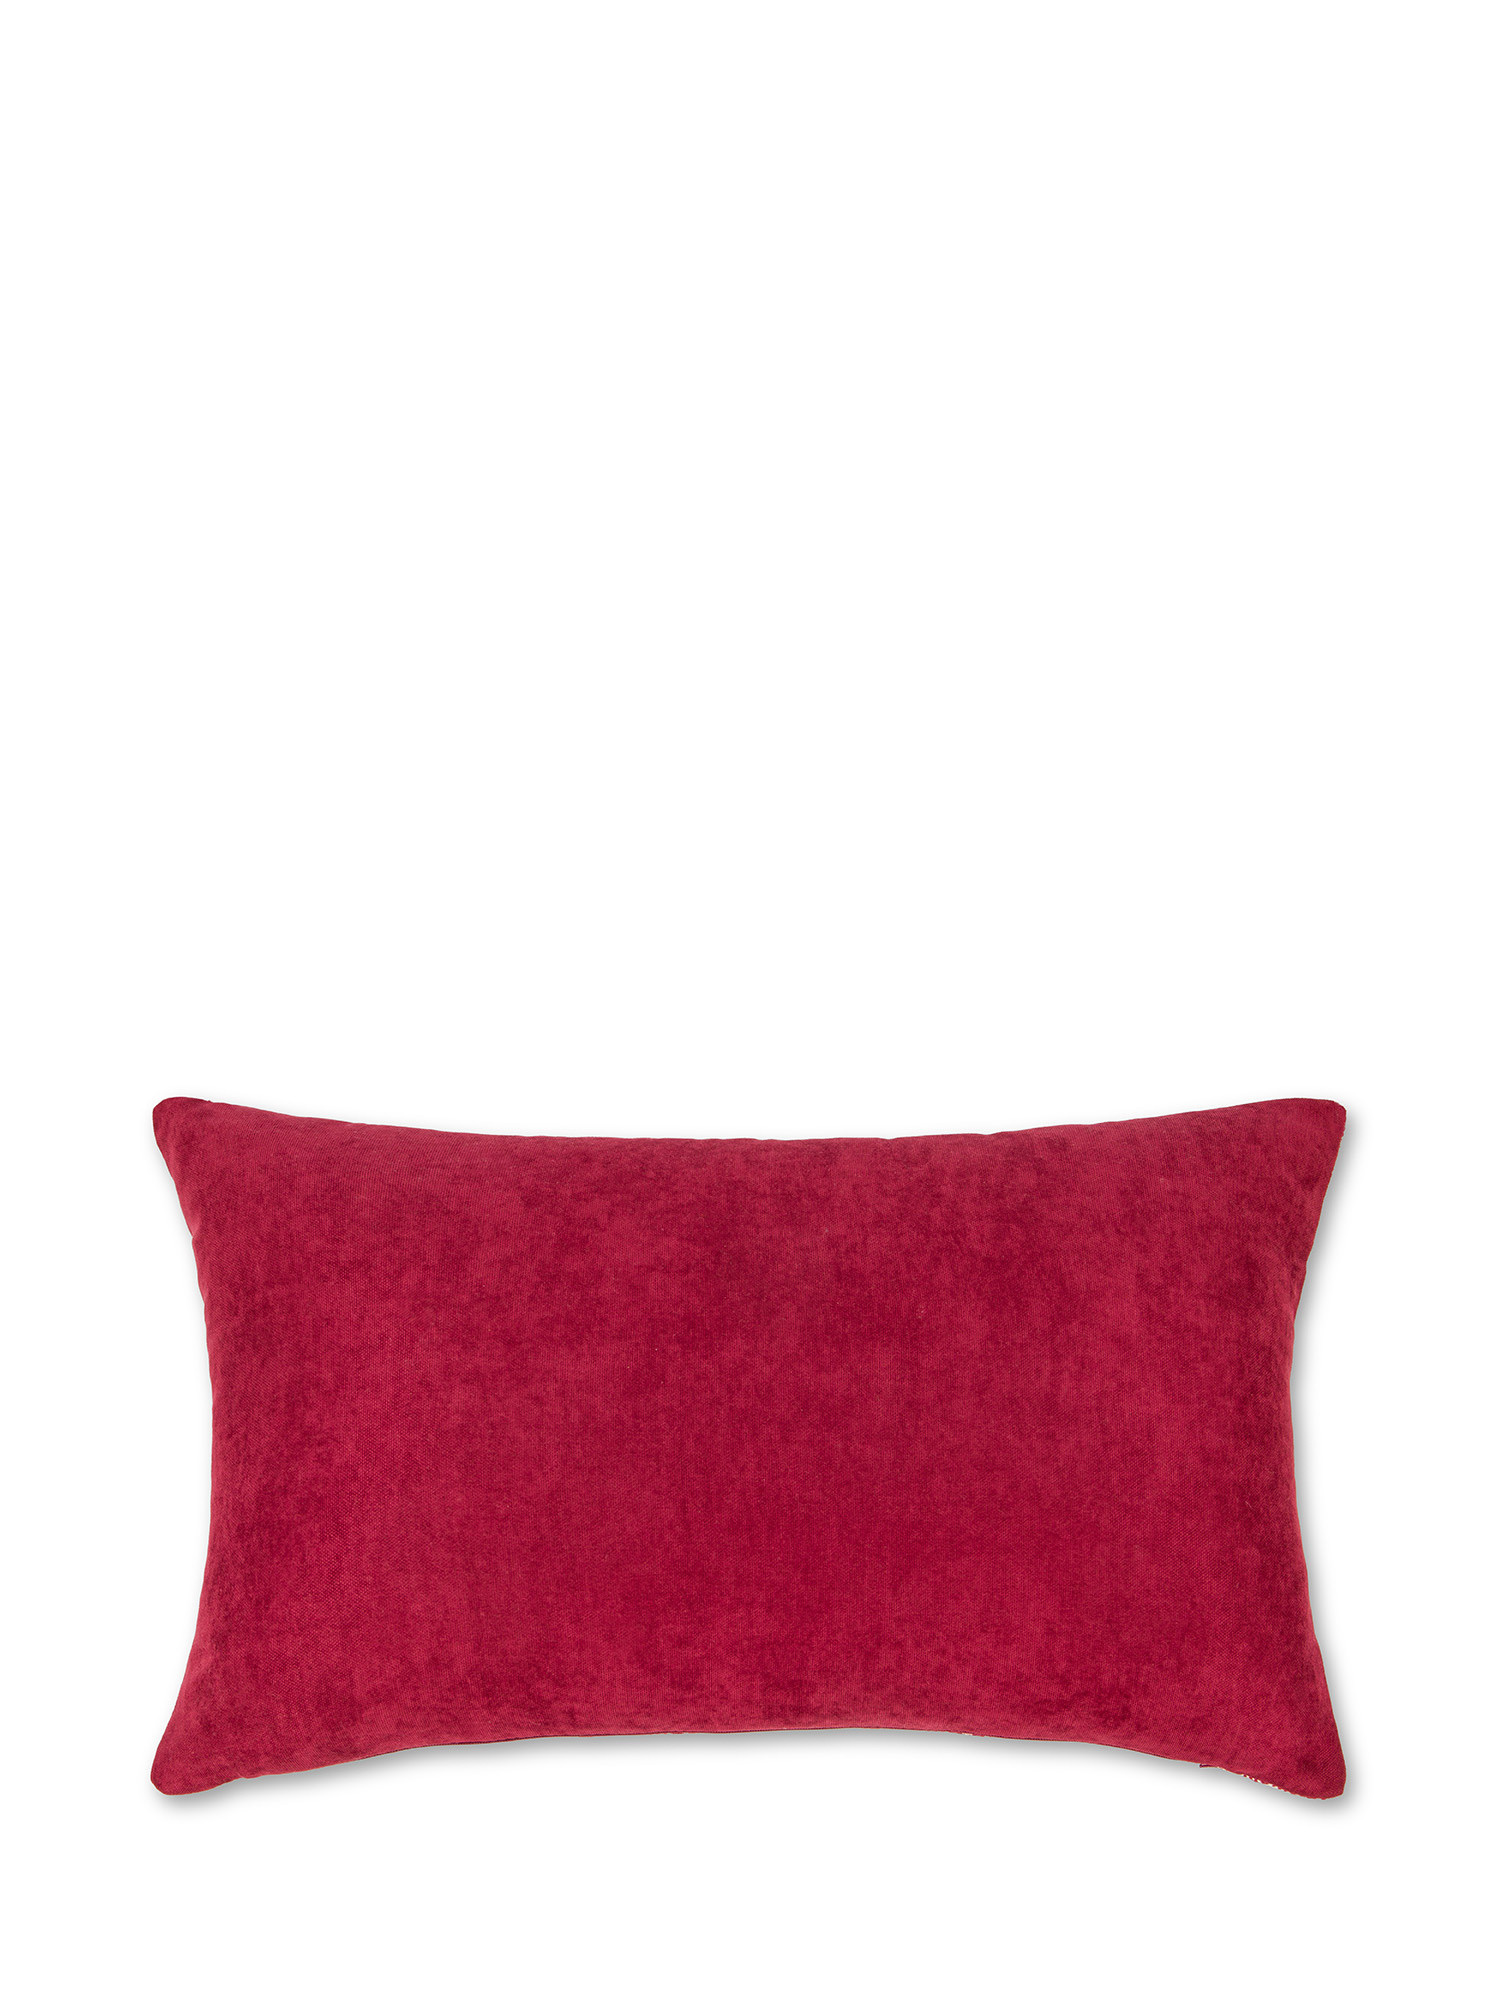 Cuscino tessuto jacquard motivo geometrico 35X55cm, Rosso, large image number 1